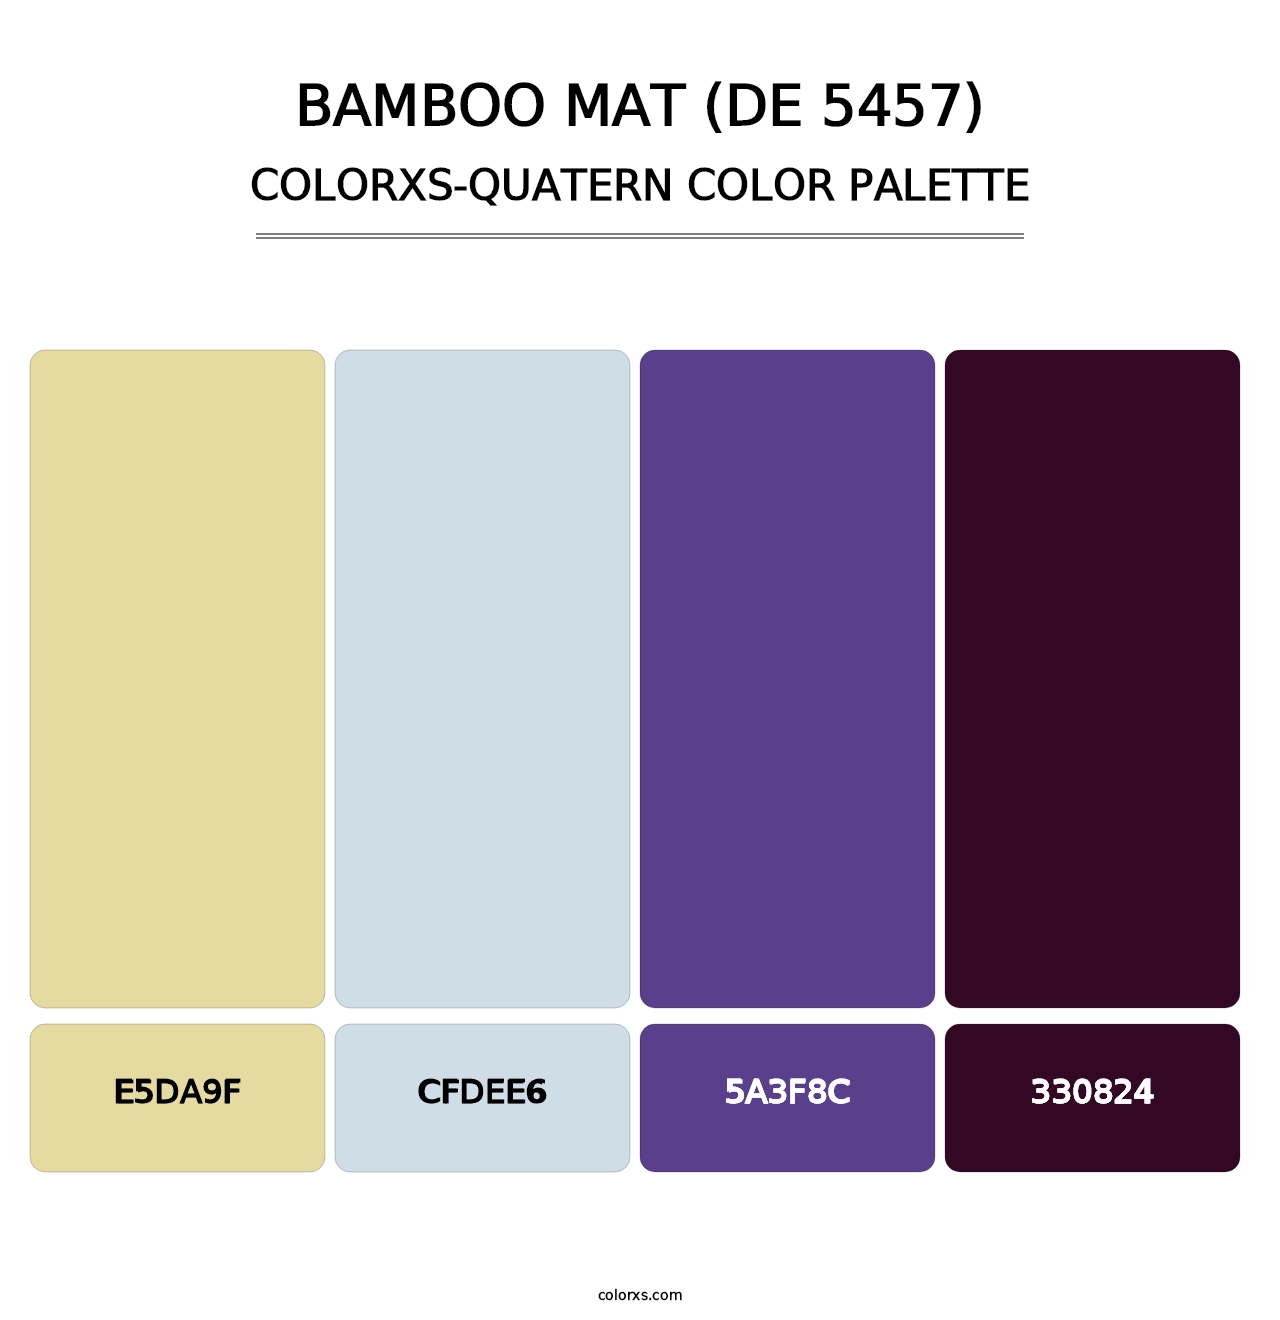 Bamboo Mat (DE 5457) - Colorxs Quatern Palette